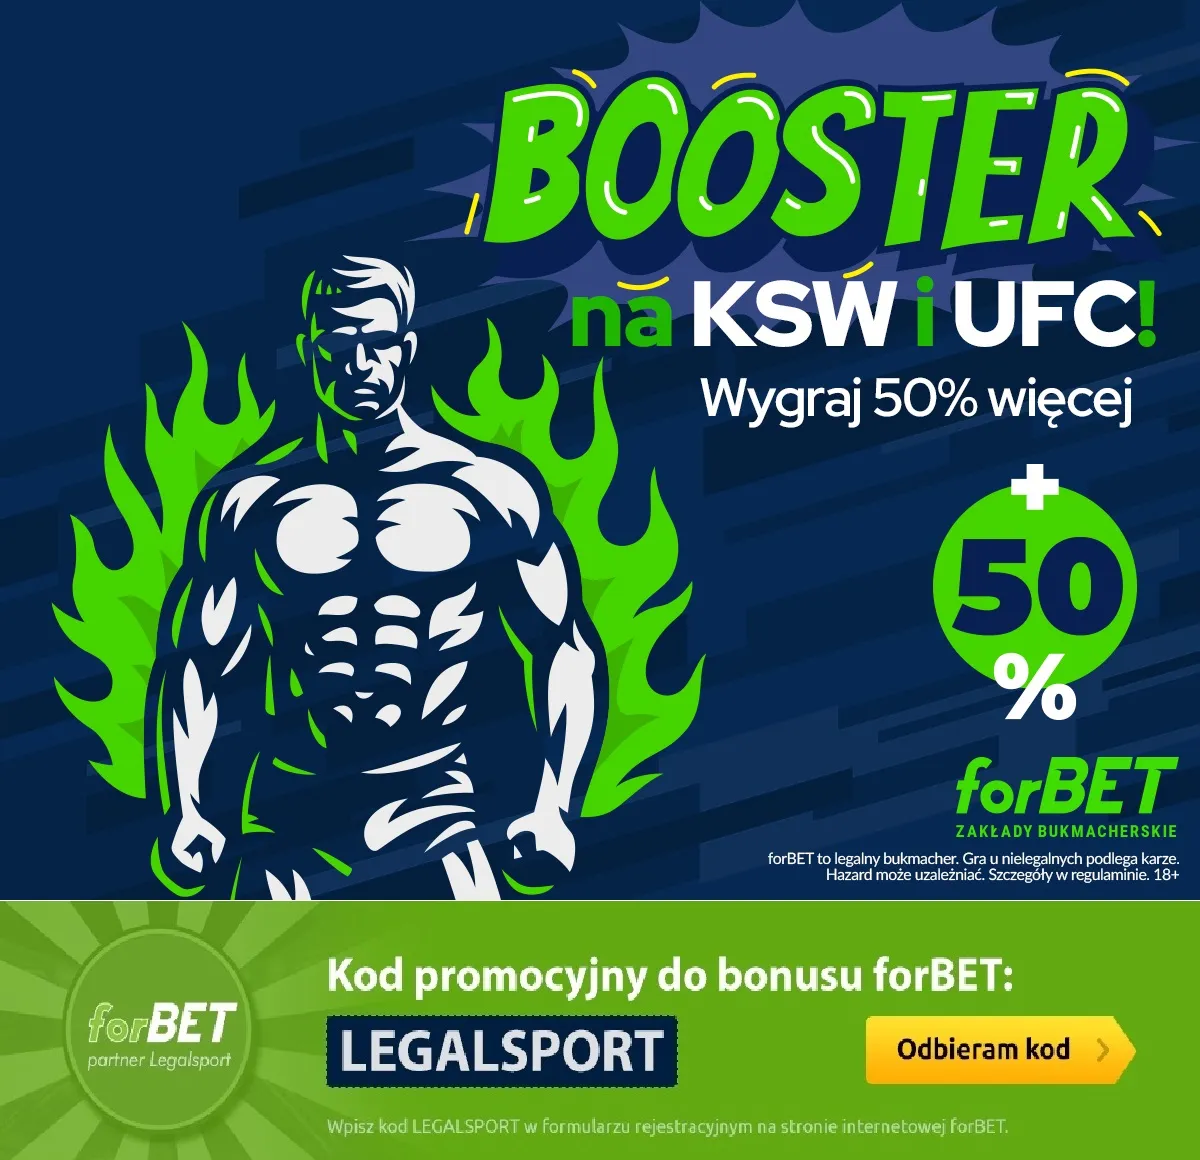 Promocja z Boosterem na KSW i UFC